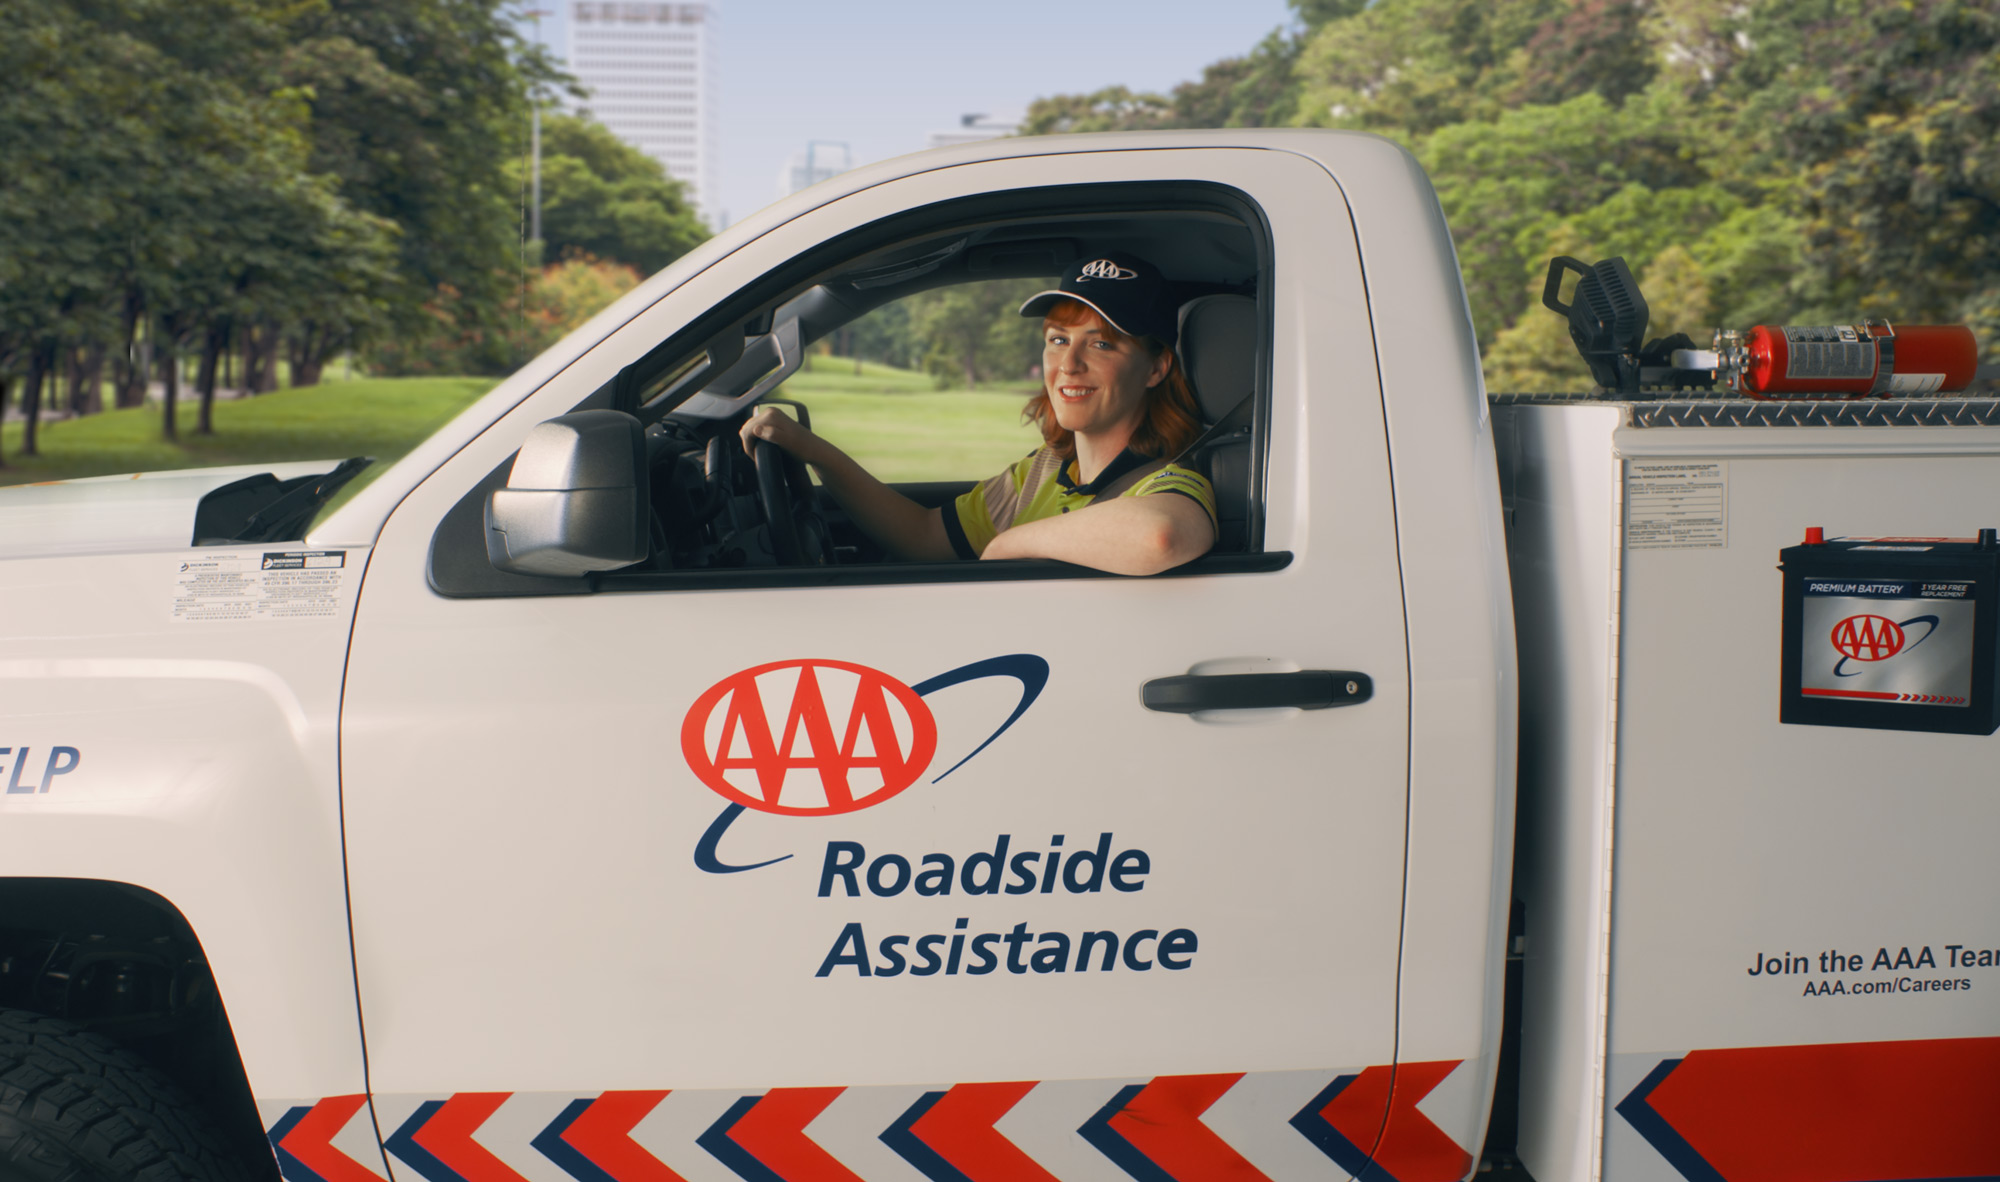 AAA roadside expert behind wheel of truck